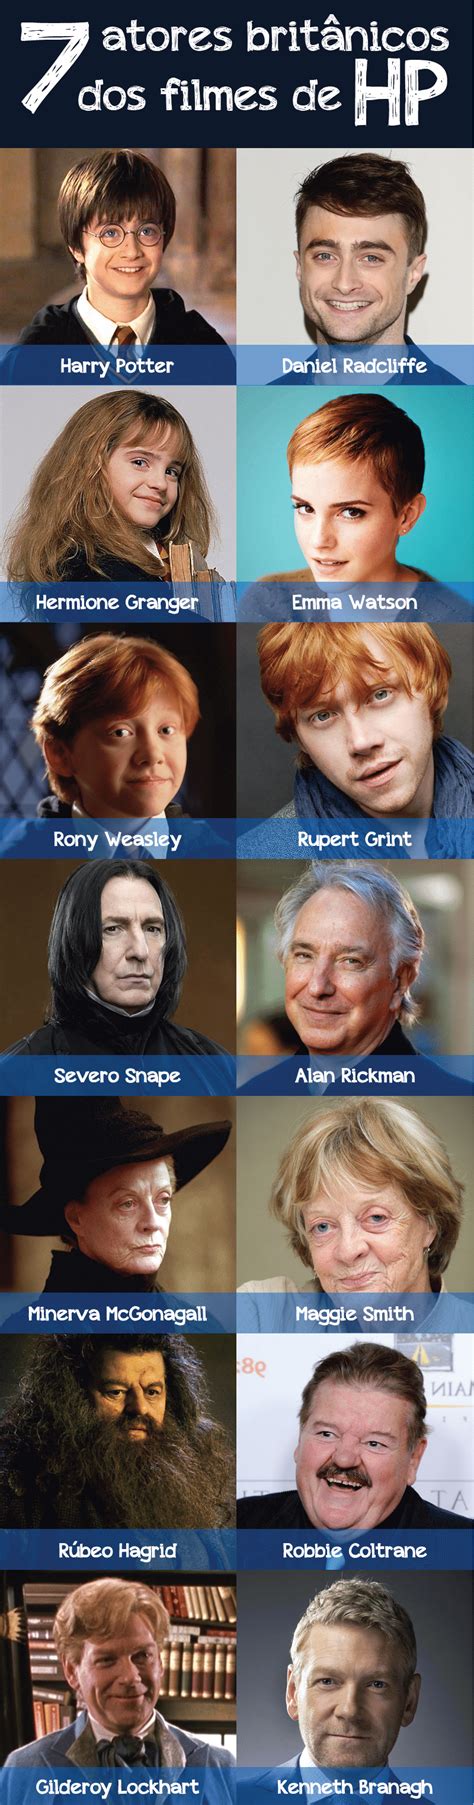 Atores Do Elenco De Harry Potter